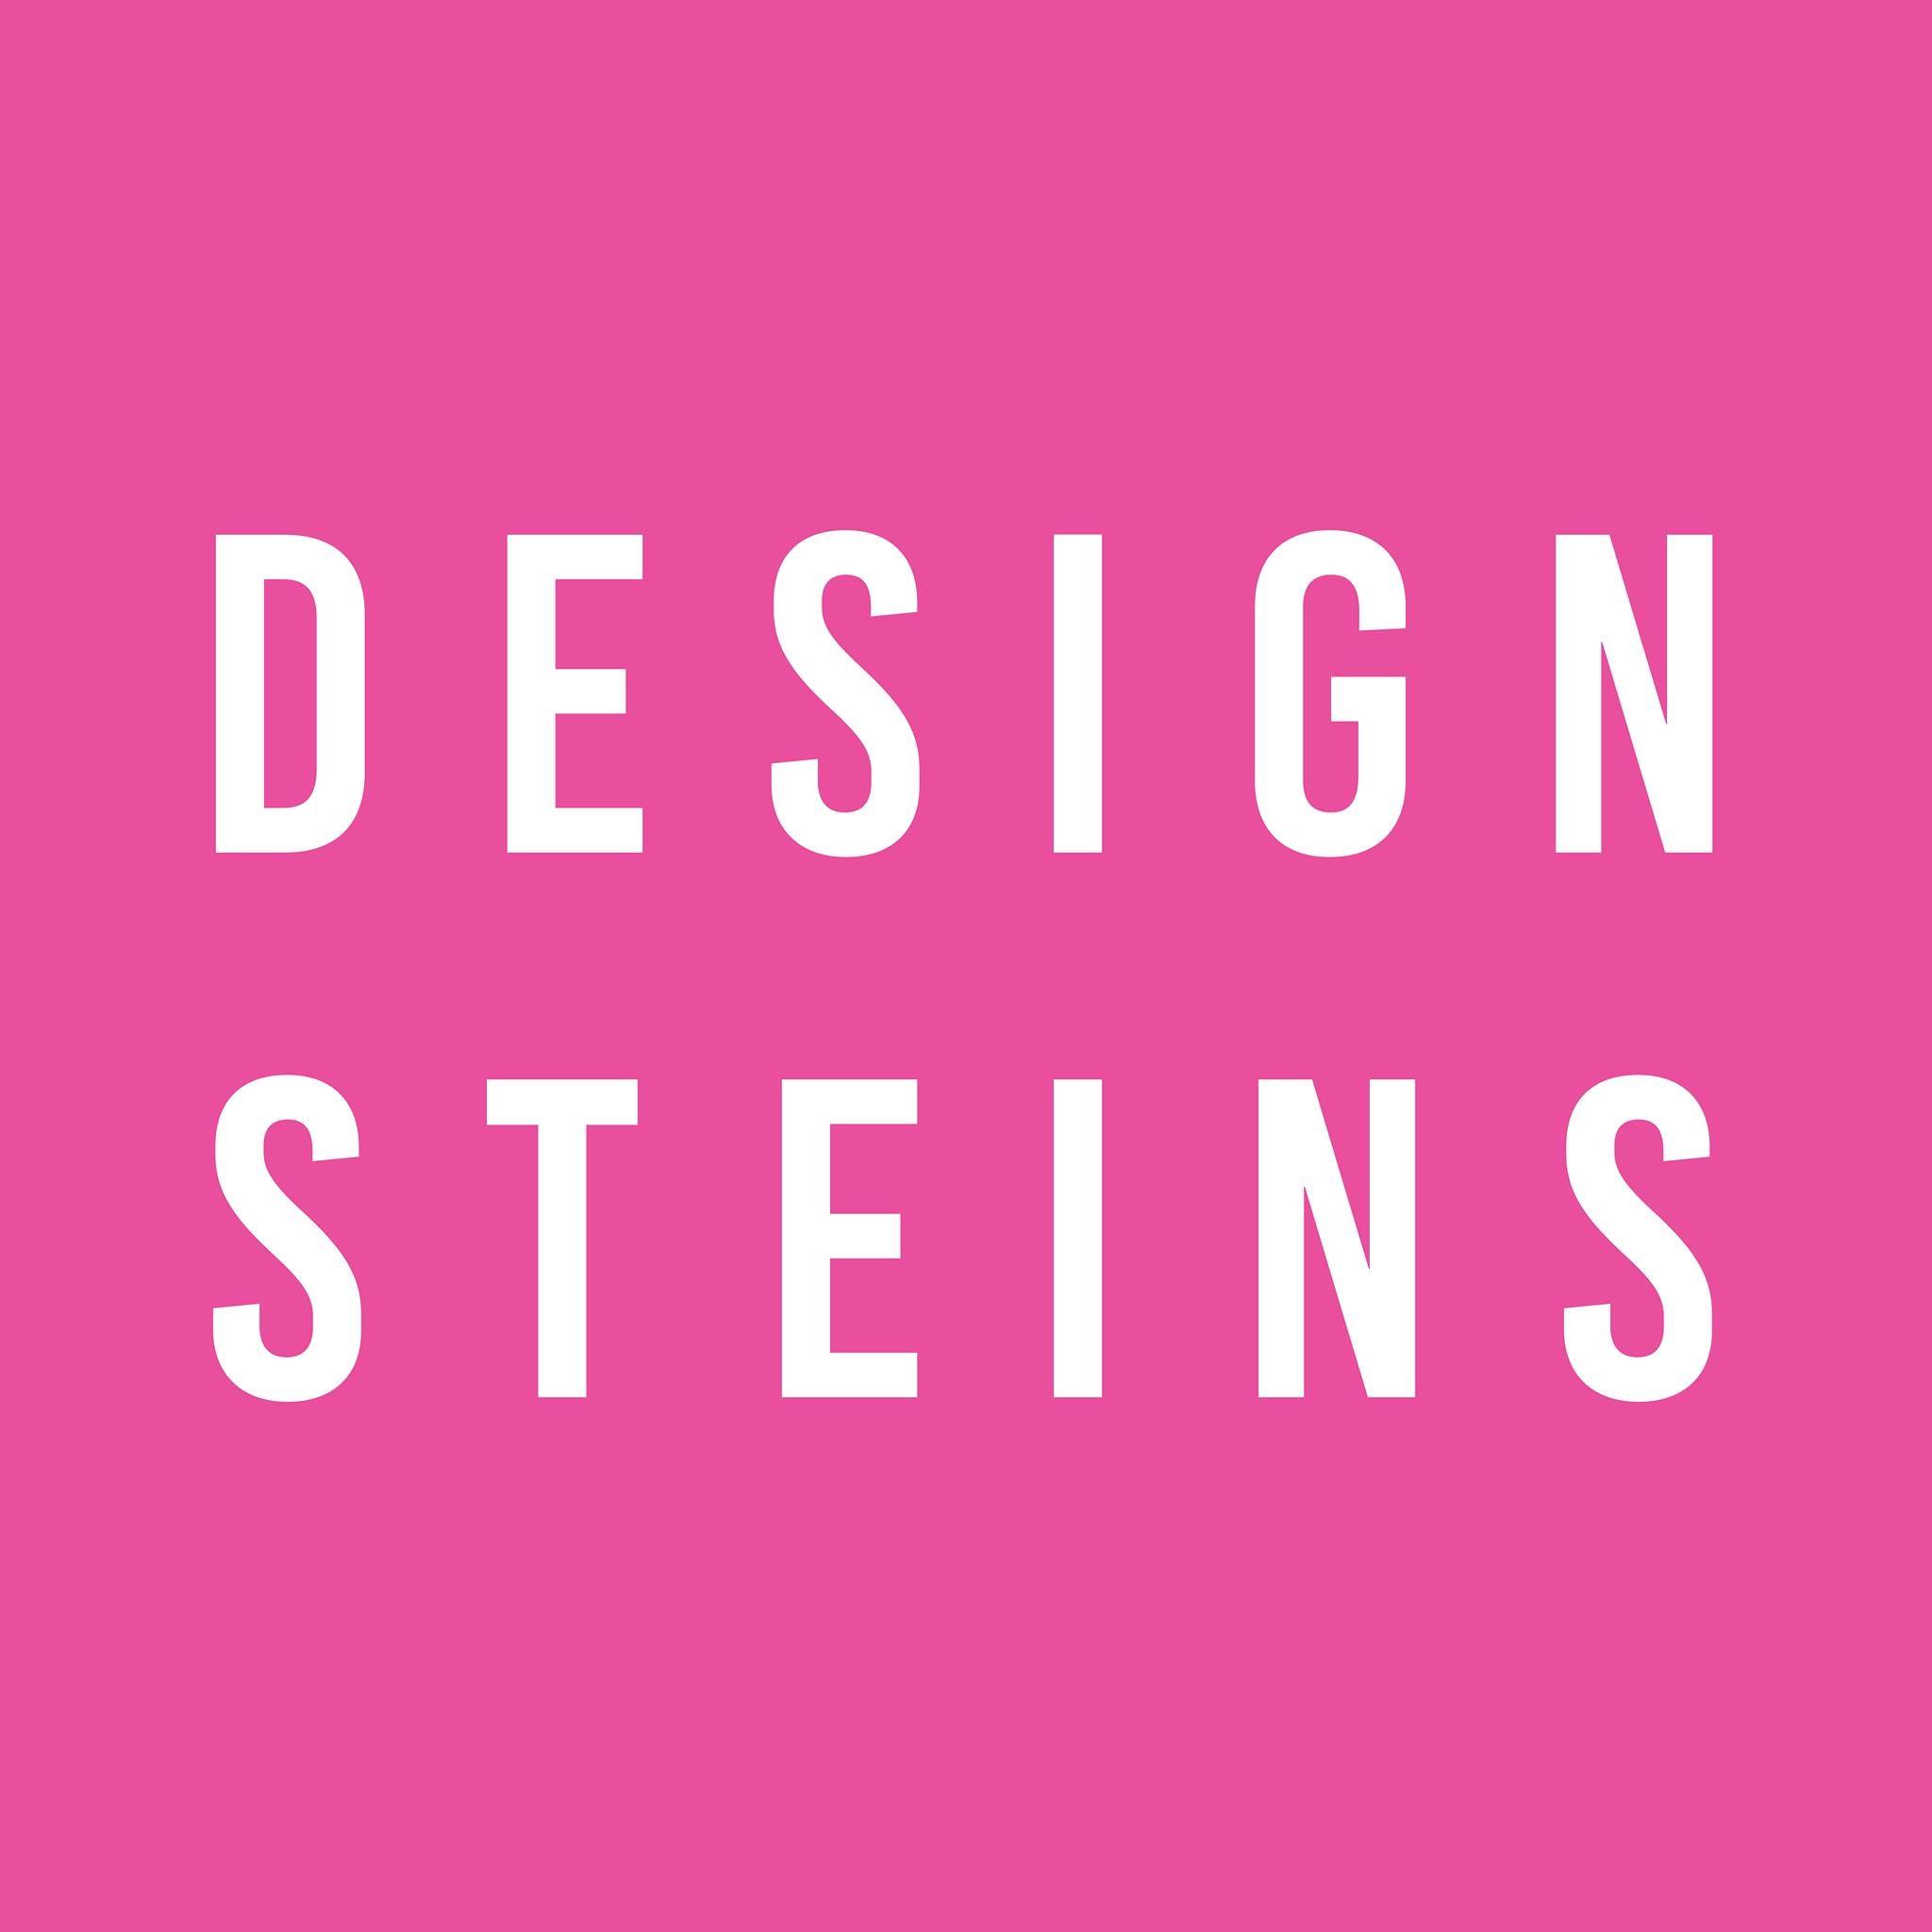 Designsteins Displays